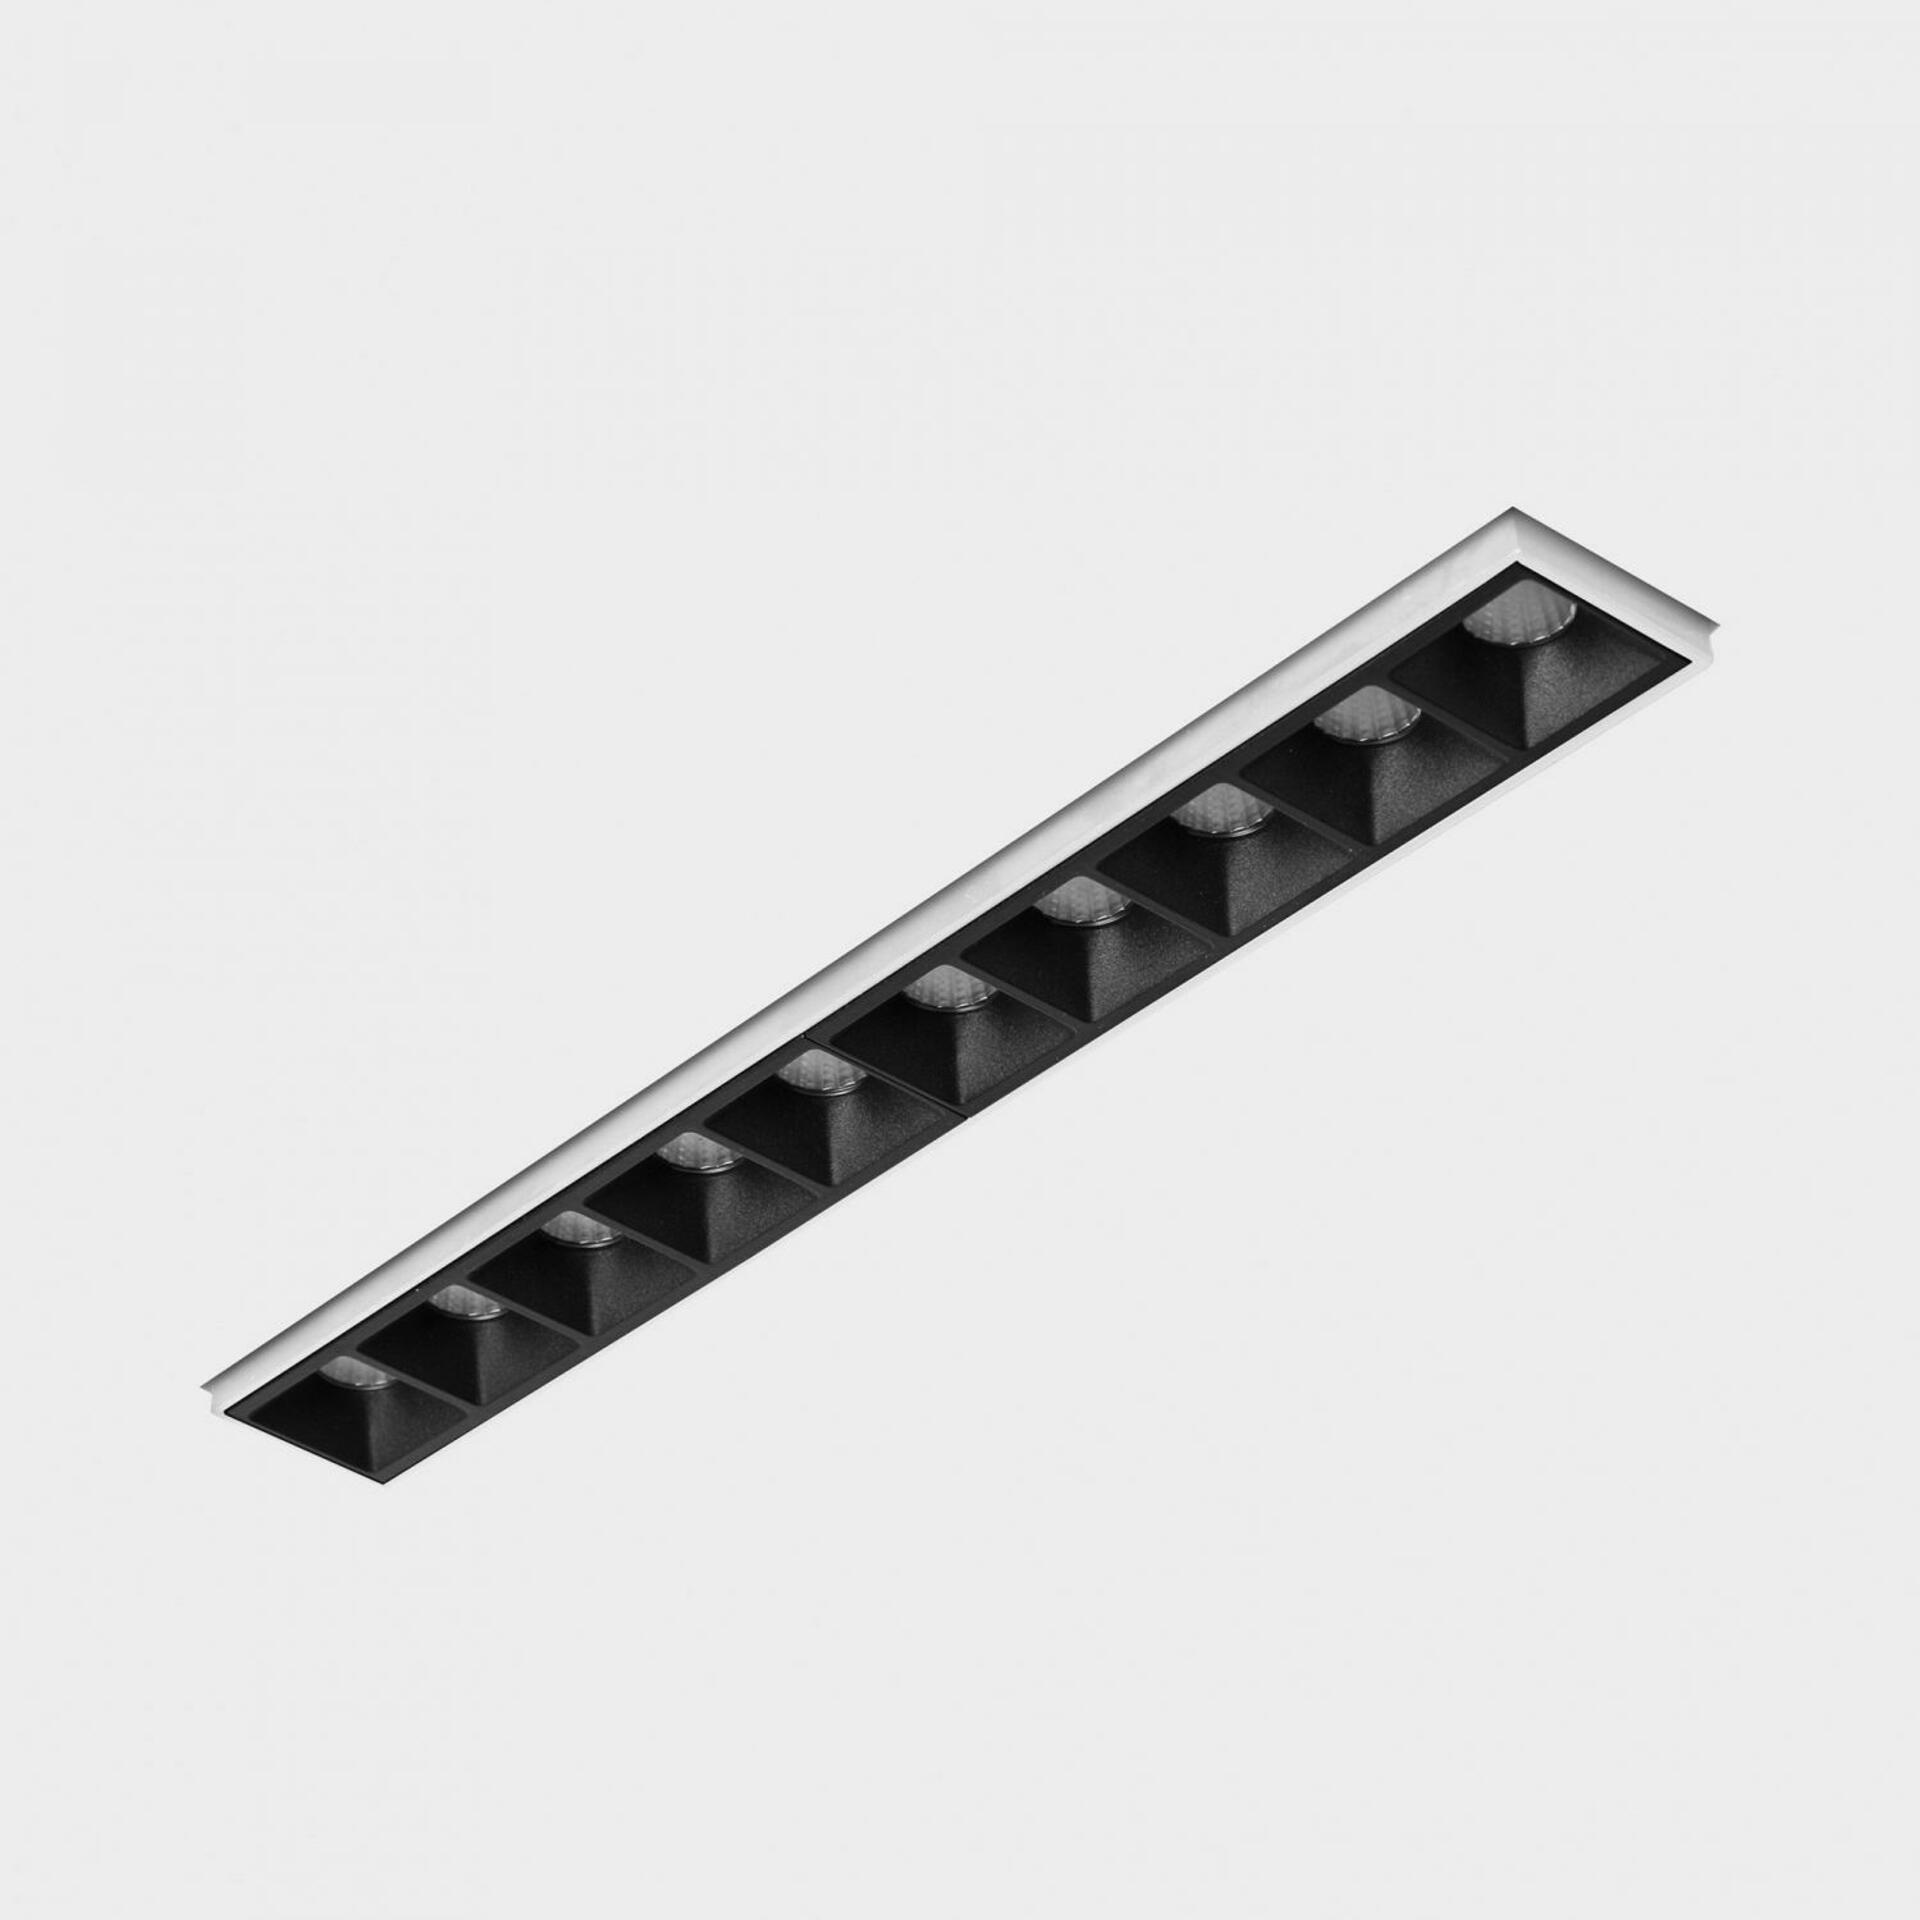 KOHL LIGHTING KOHL-Lighting NSES bezrámečkové zapuštěné svítidlo 270x35 mm bílá-černá 20 W CRI 90 2700K 1.10V